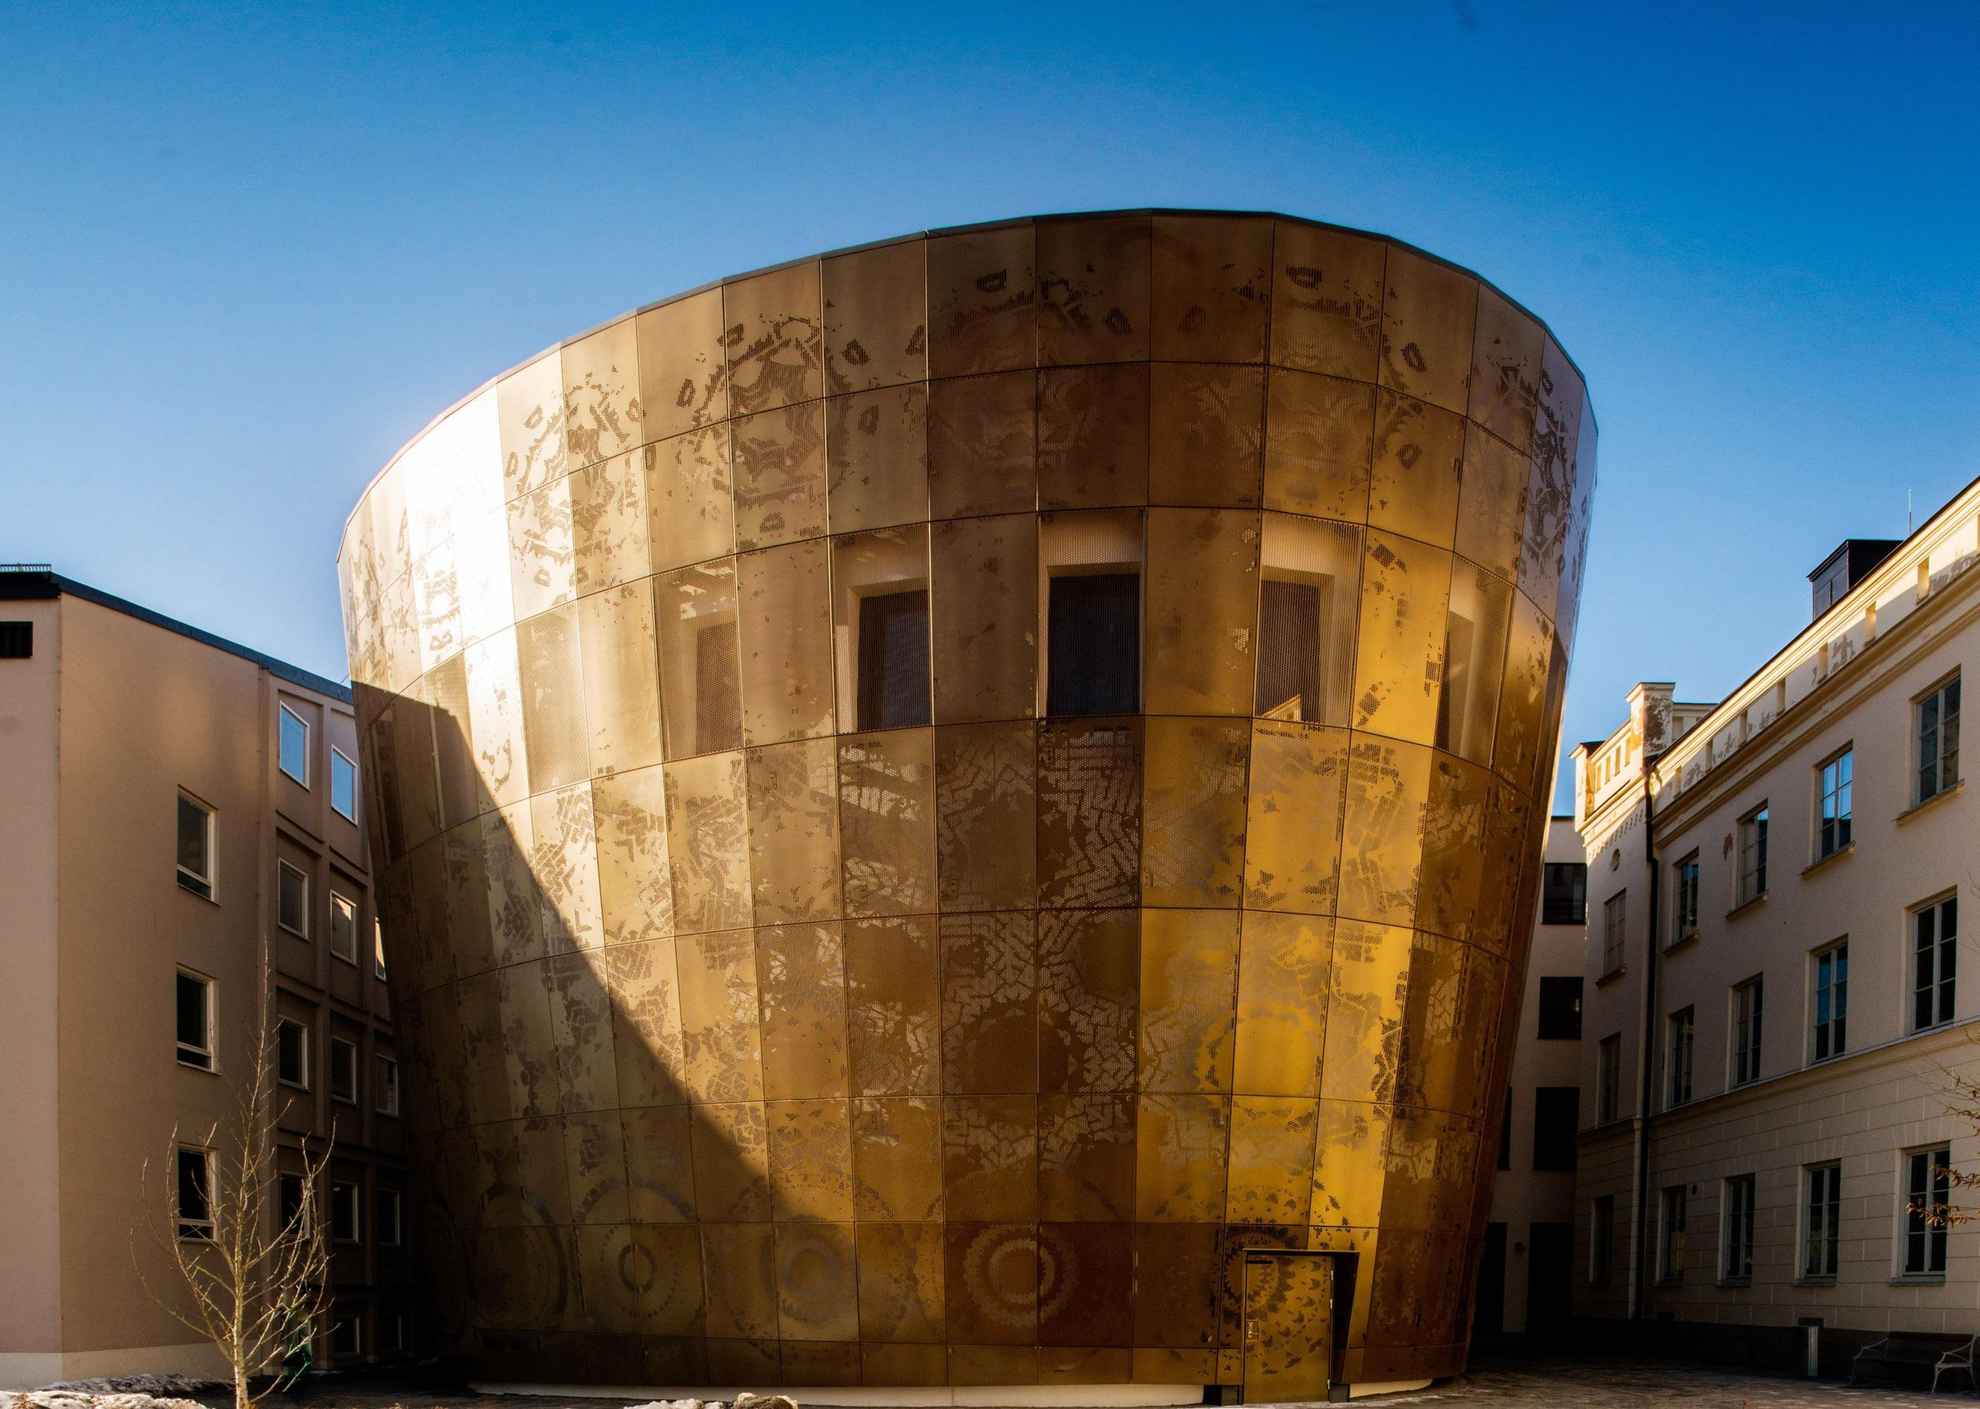 Een subtiel glanzend hoefijzervormig gebouw. In de goud glinsterende gevel zie je een vaag patroon.